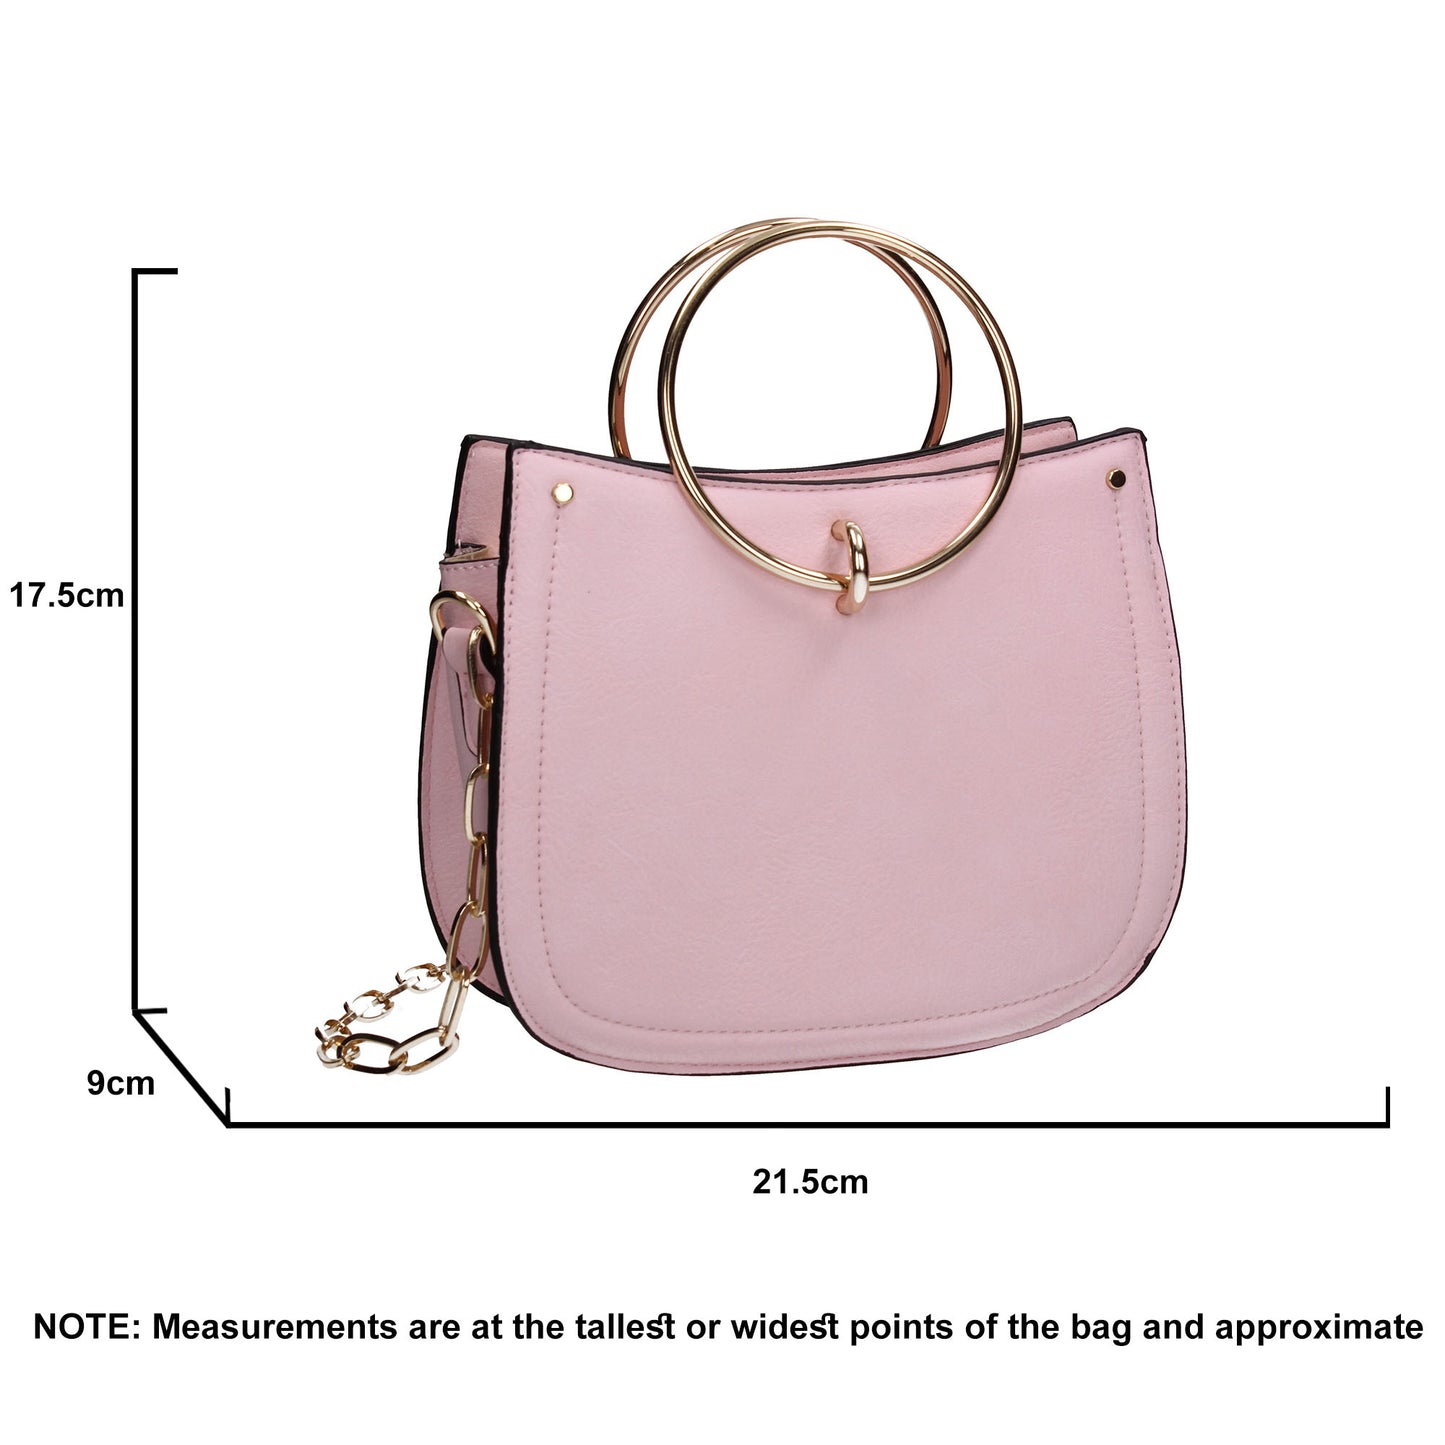 Kera Clutch Bag Pink Cute Cummer Cheap Prom Party Clutch Bag